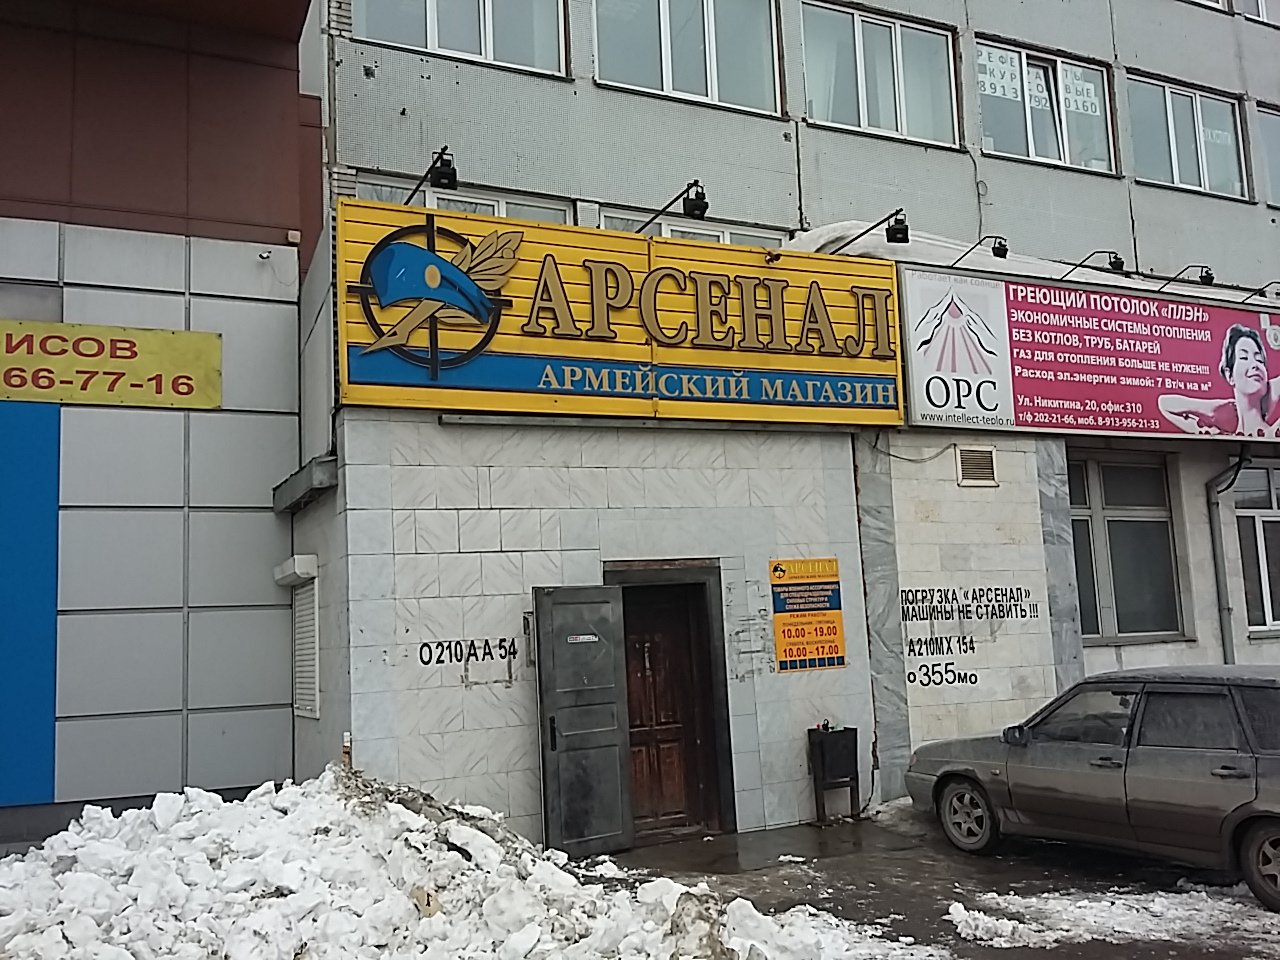 Вход в армейский магазин "Арсенал" на Никитина в Новосибирске